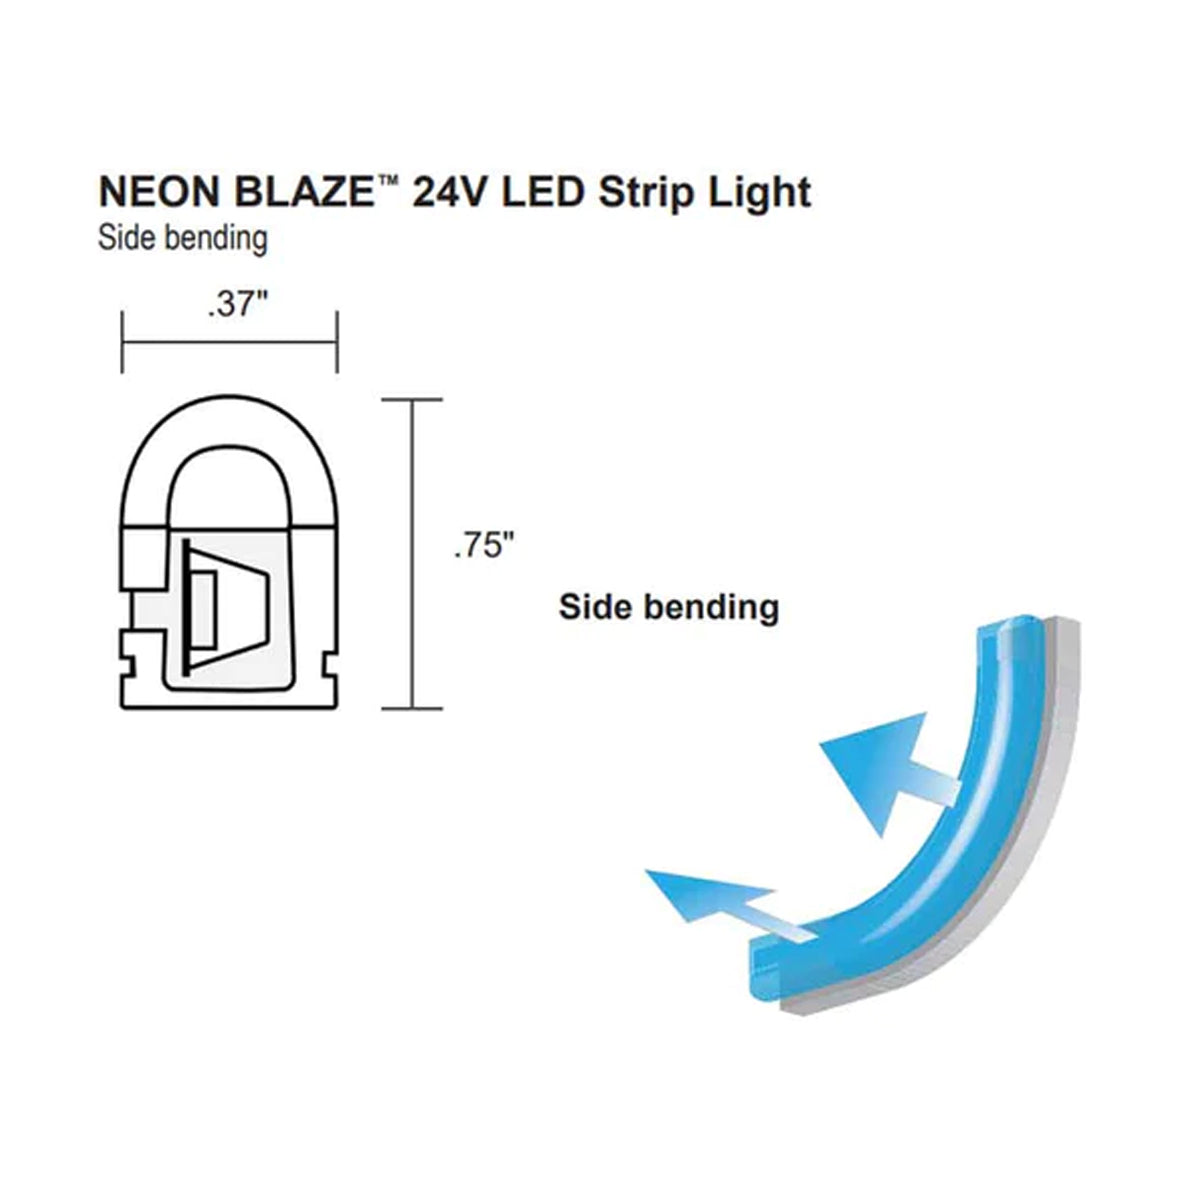 Neon BLAZE LED Neon Strip Light, Gold, 24V, Side Bending